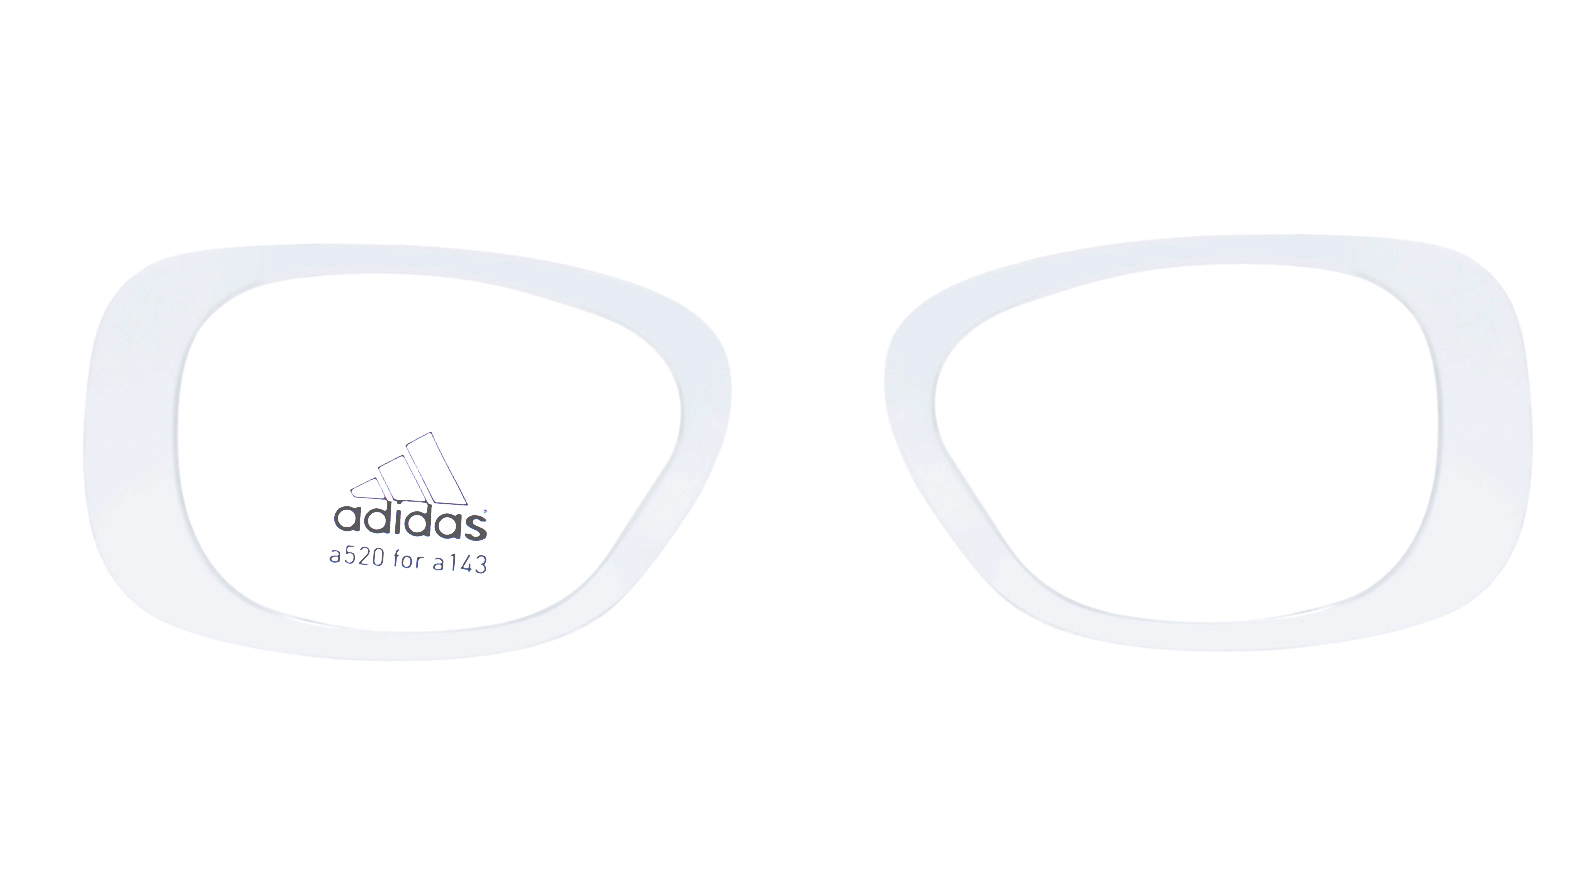 Оптический адаптер Adidas clip a520 к очкам a143 TerrexTM Pro комплект из двух книг как править миром классно быть богом